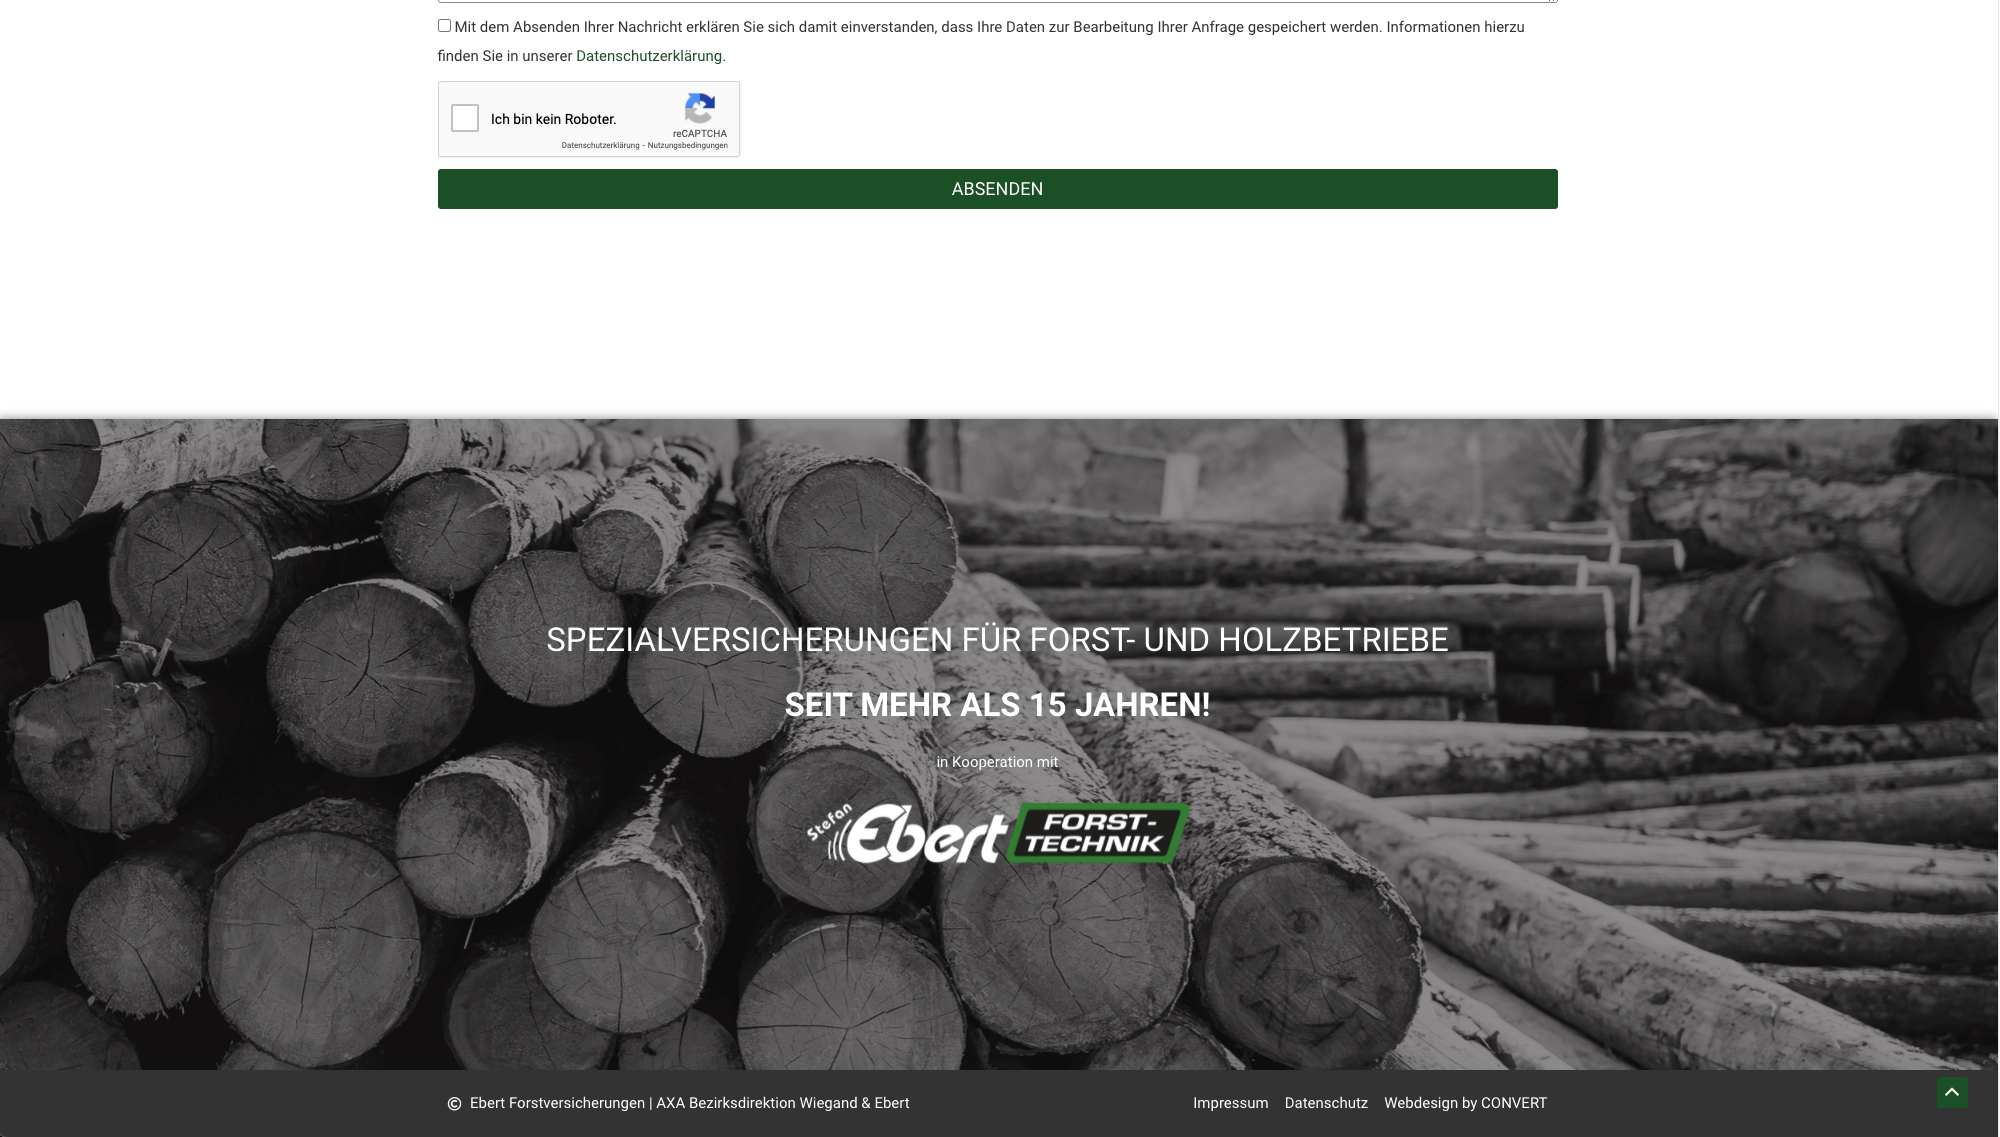 Convert GmbH CO KG - Projektstory EBERT Forstversicherungen - Screenshot Spezialversicherungen